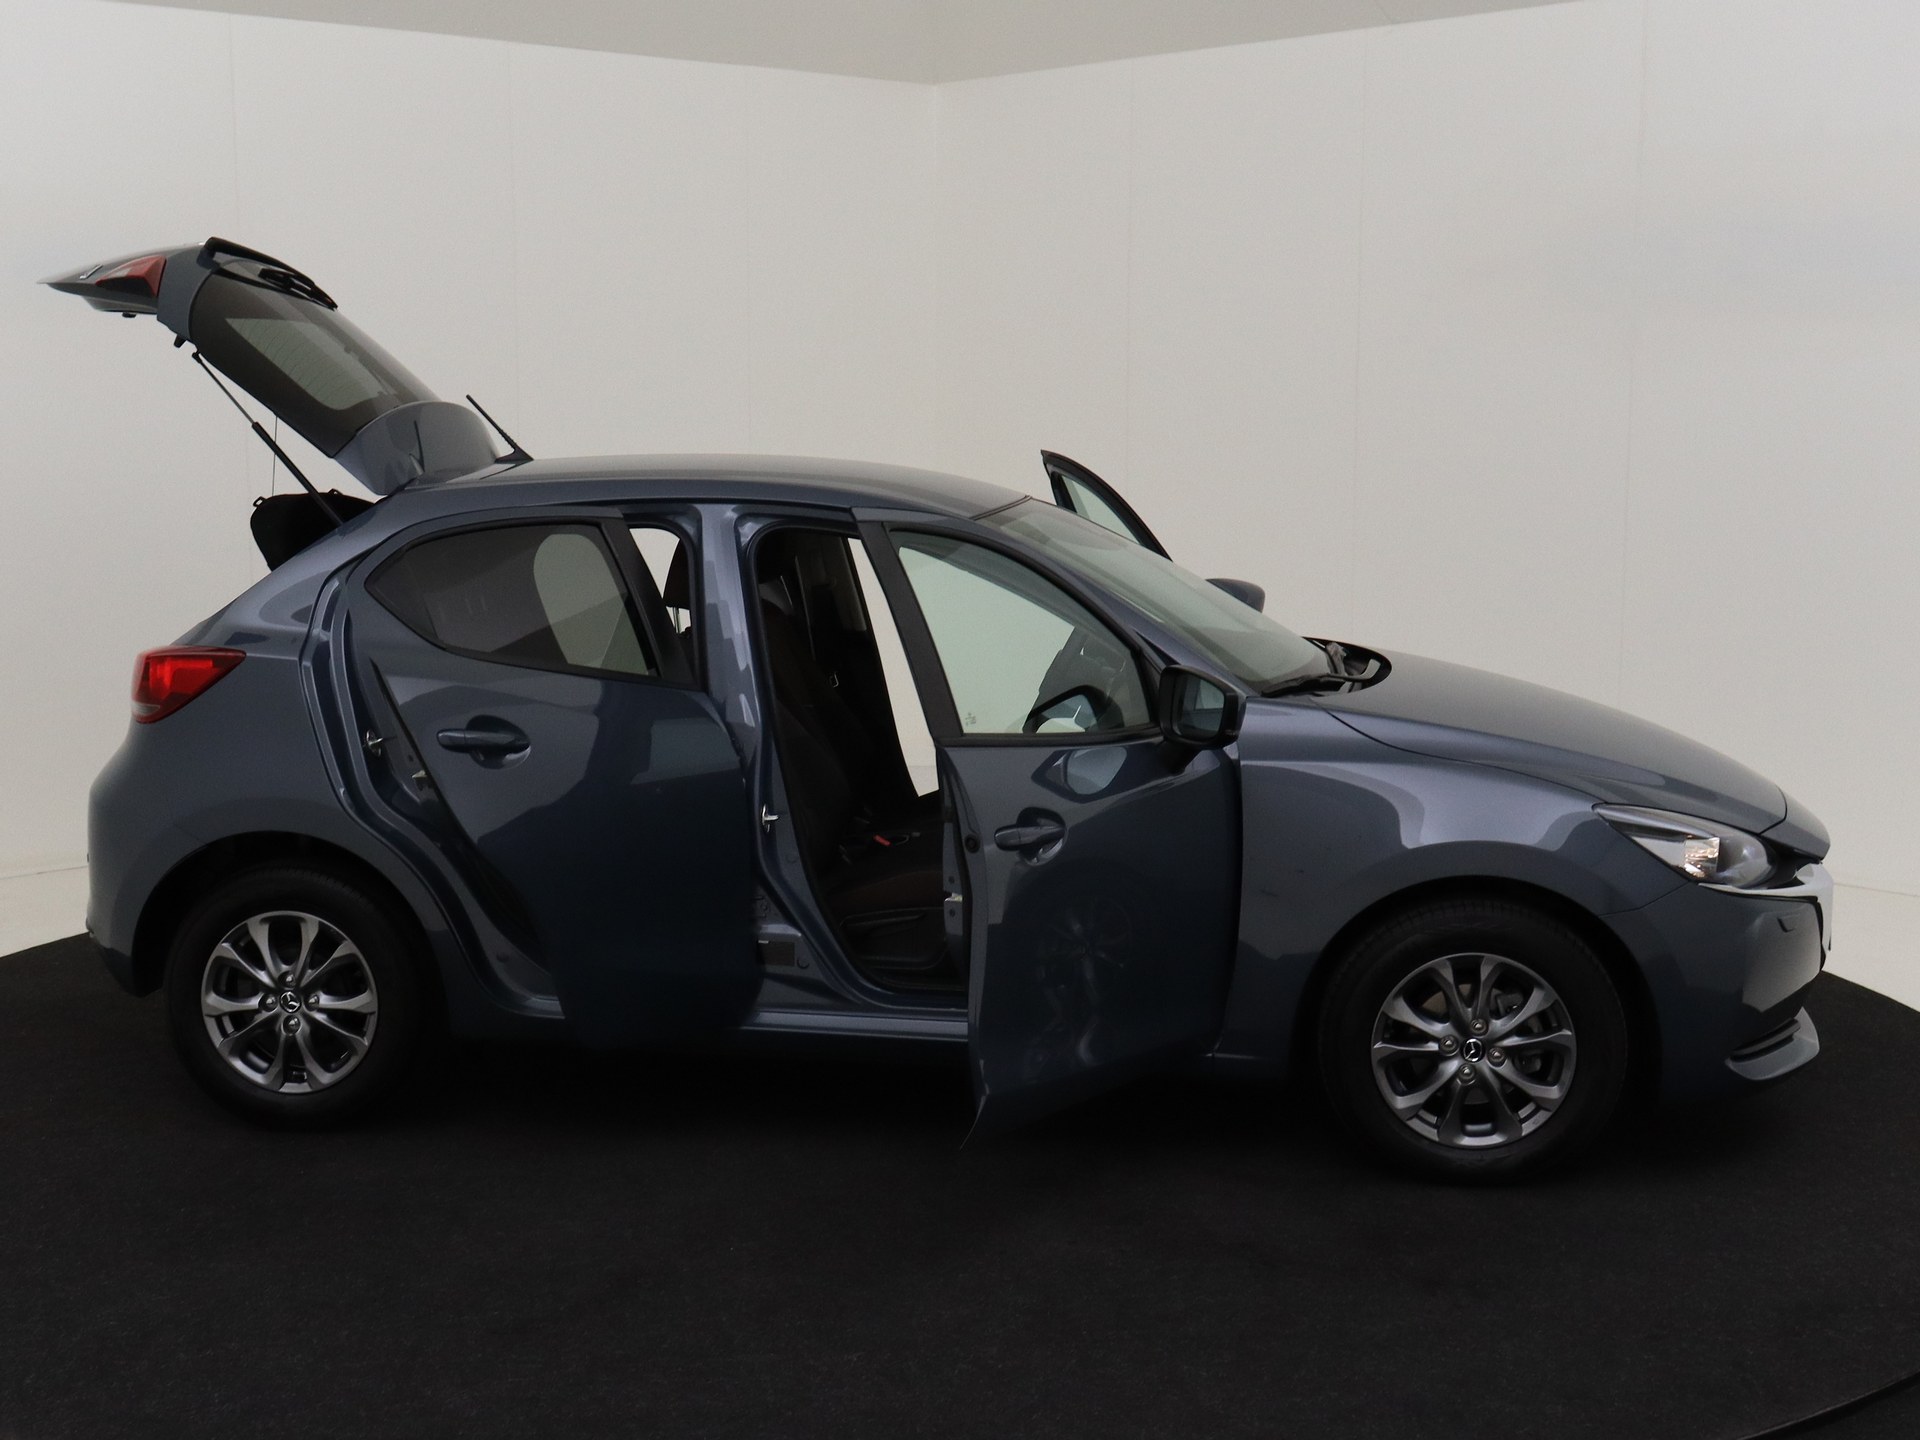 Mazda 2 1.5 SKYACTIV-G 90PK Automaat Luxury *NAVI* van CarSelexy dealer Autobedrijf Hartgerink  in Hengevelde